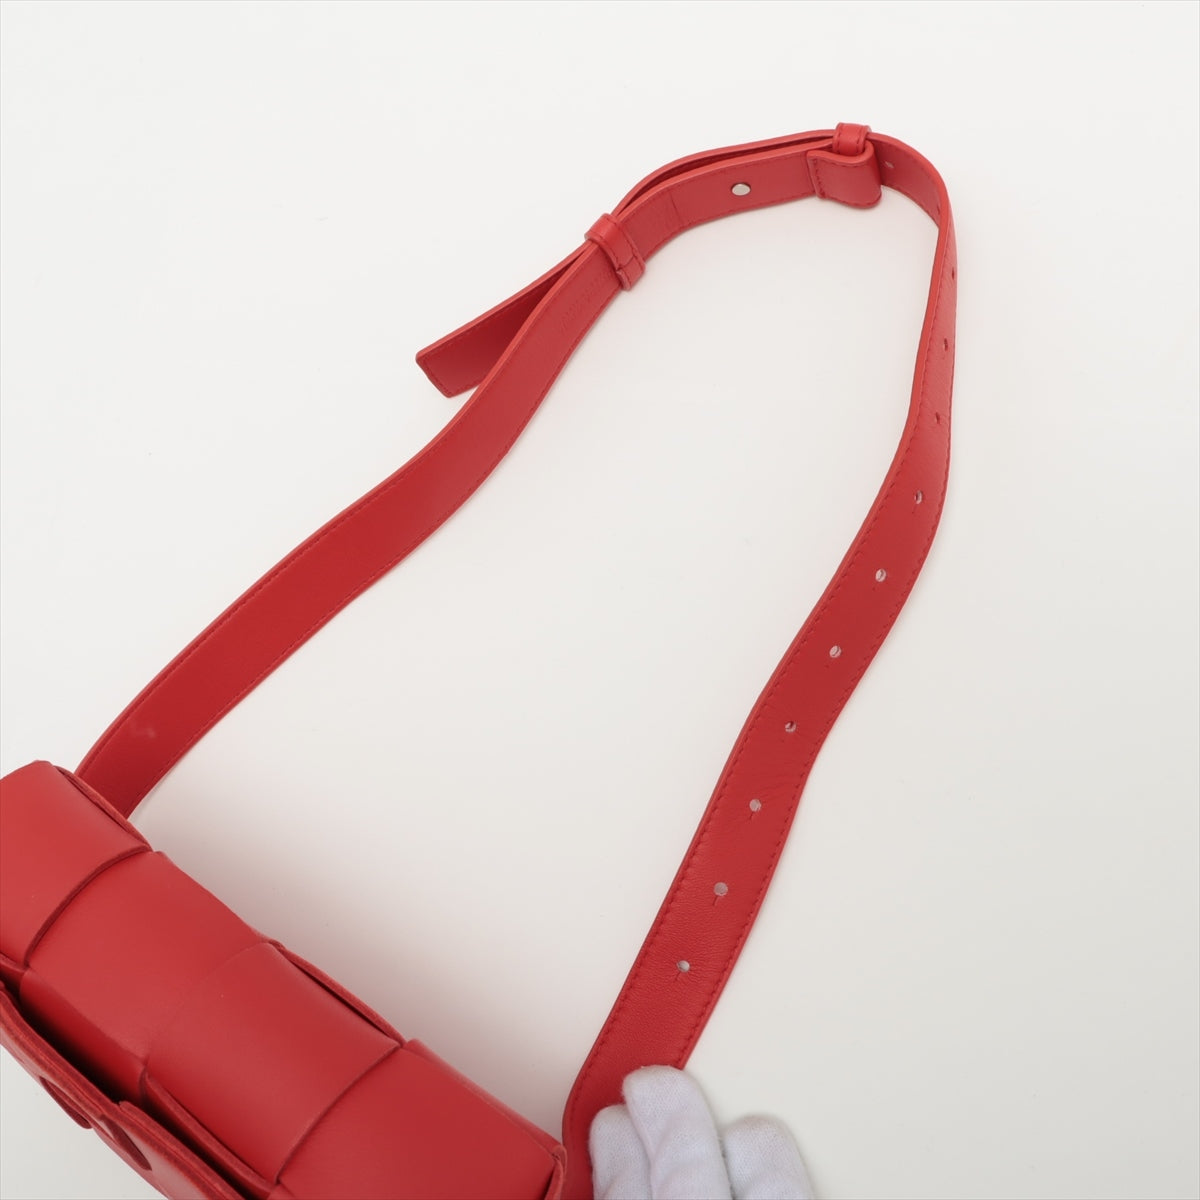 BOTTEGA VENETA Intrecciato Shoulder Bag in Leather Red